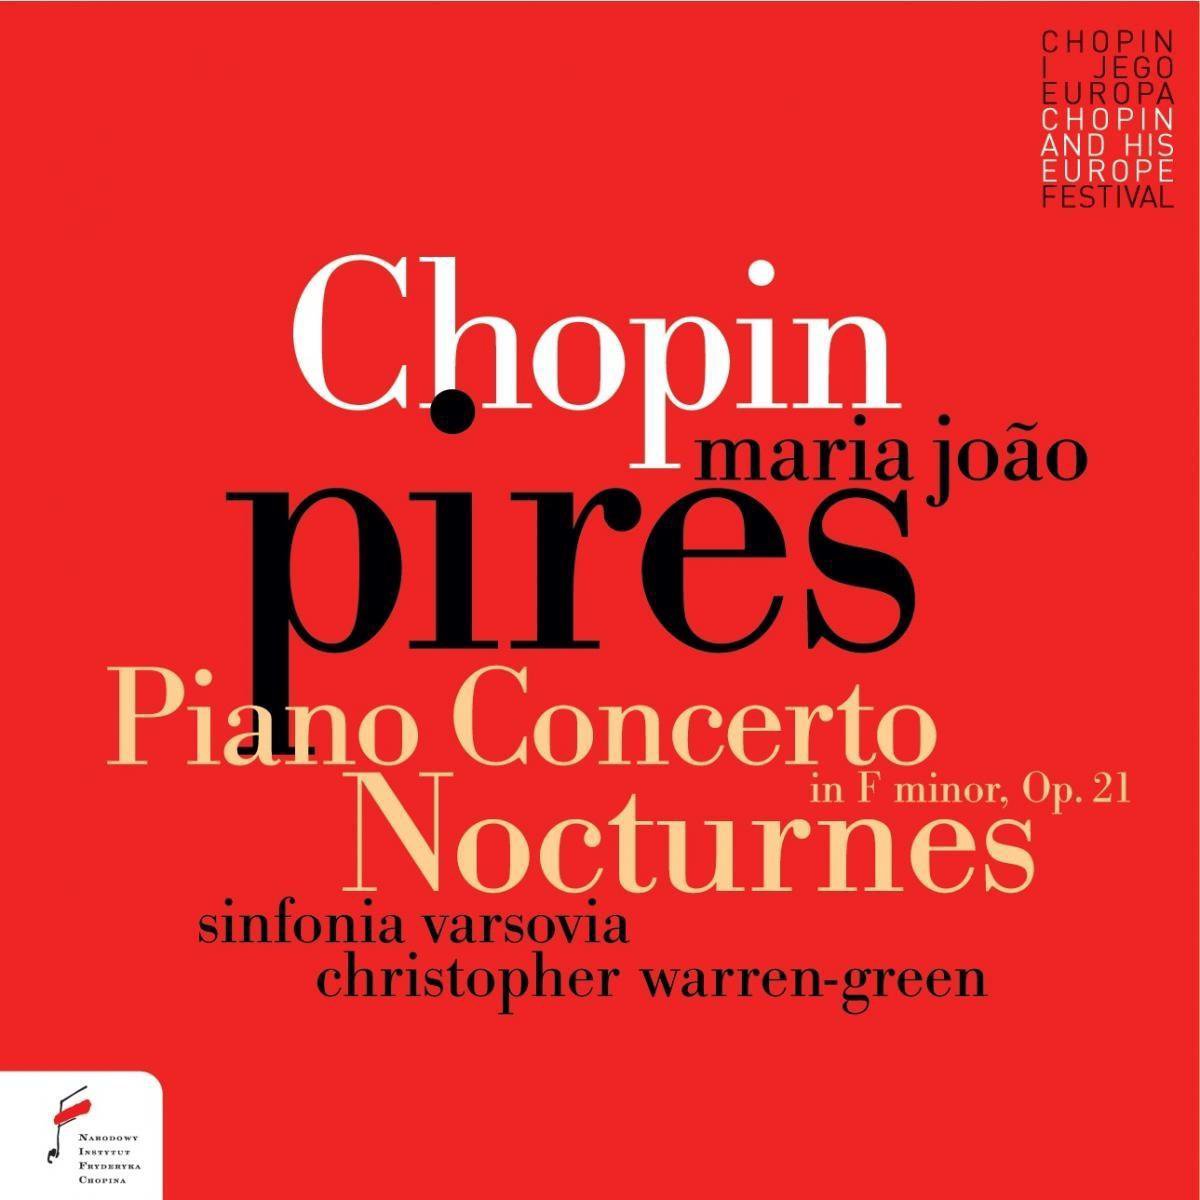 Piano Concerto / Nocturnes - Maria Joao Pires